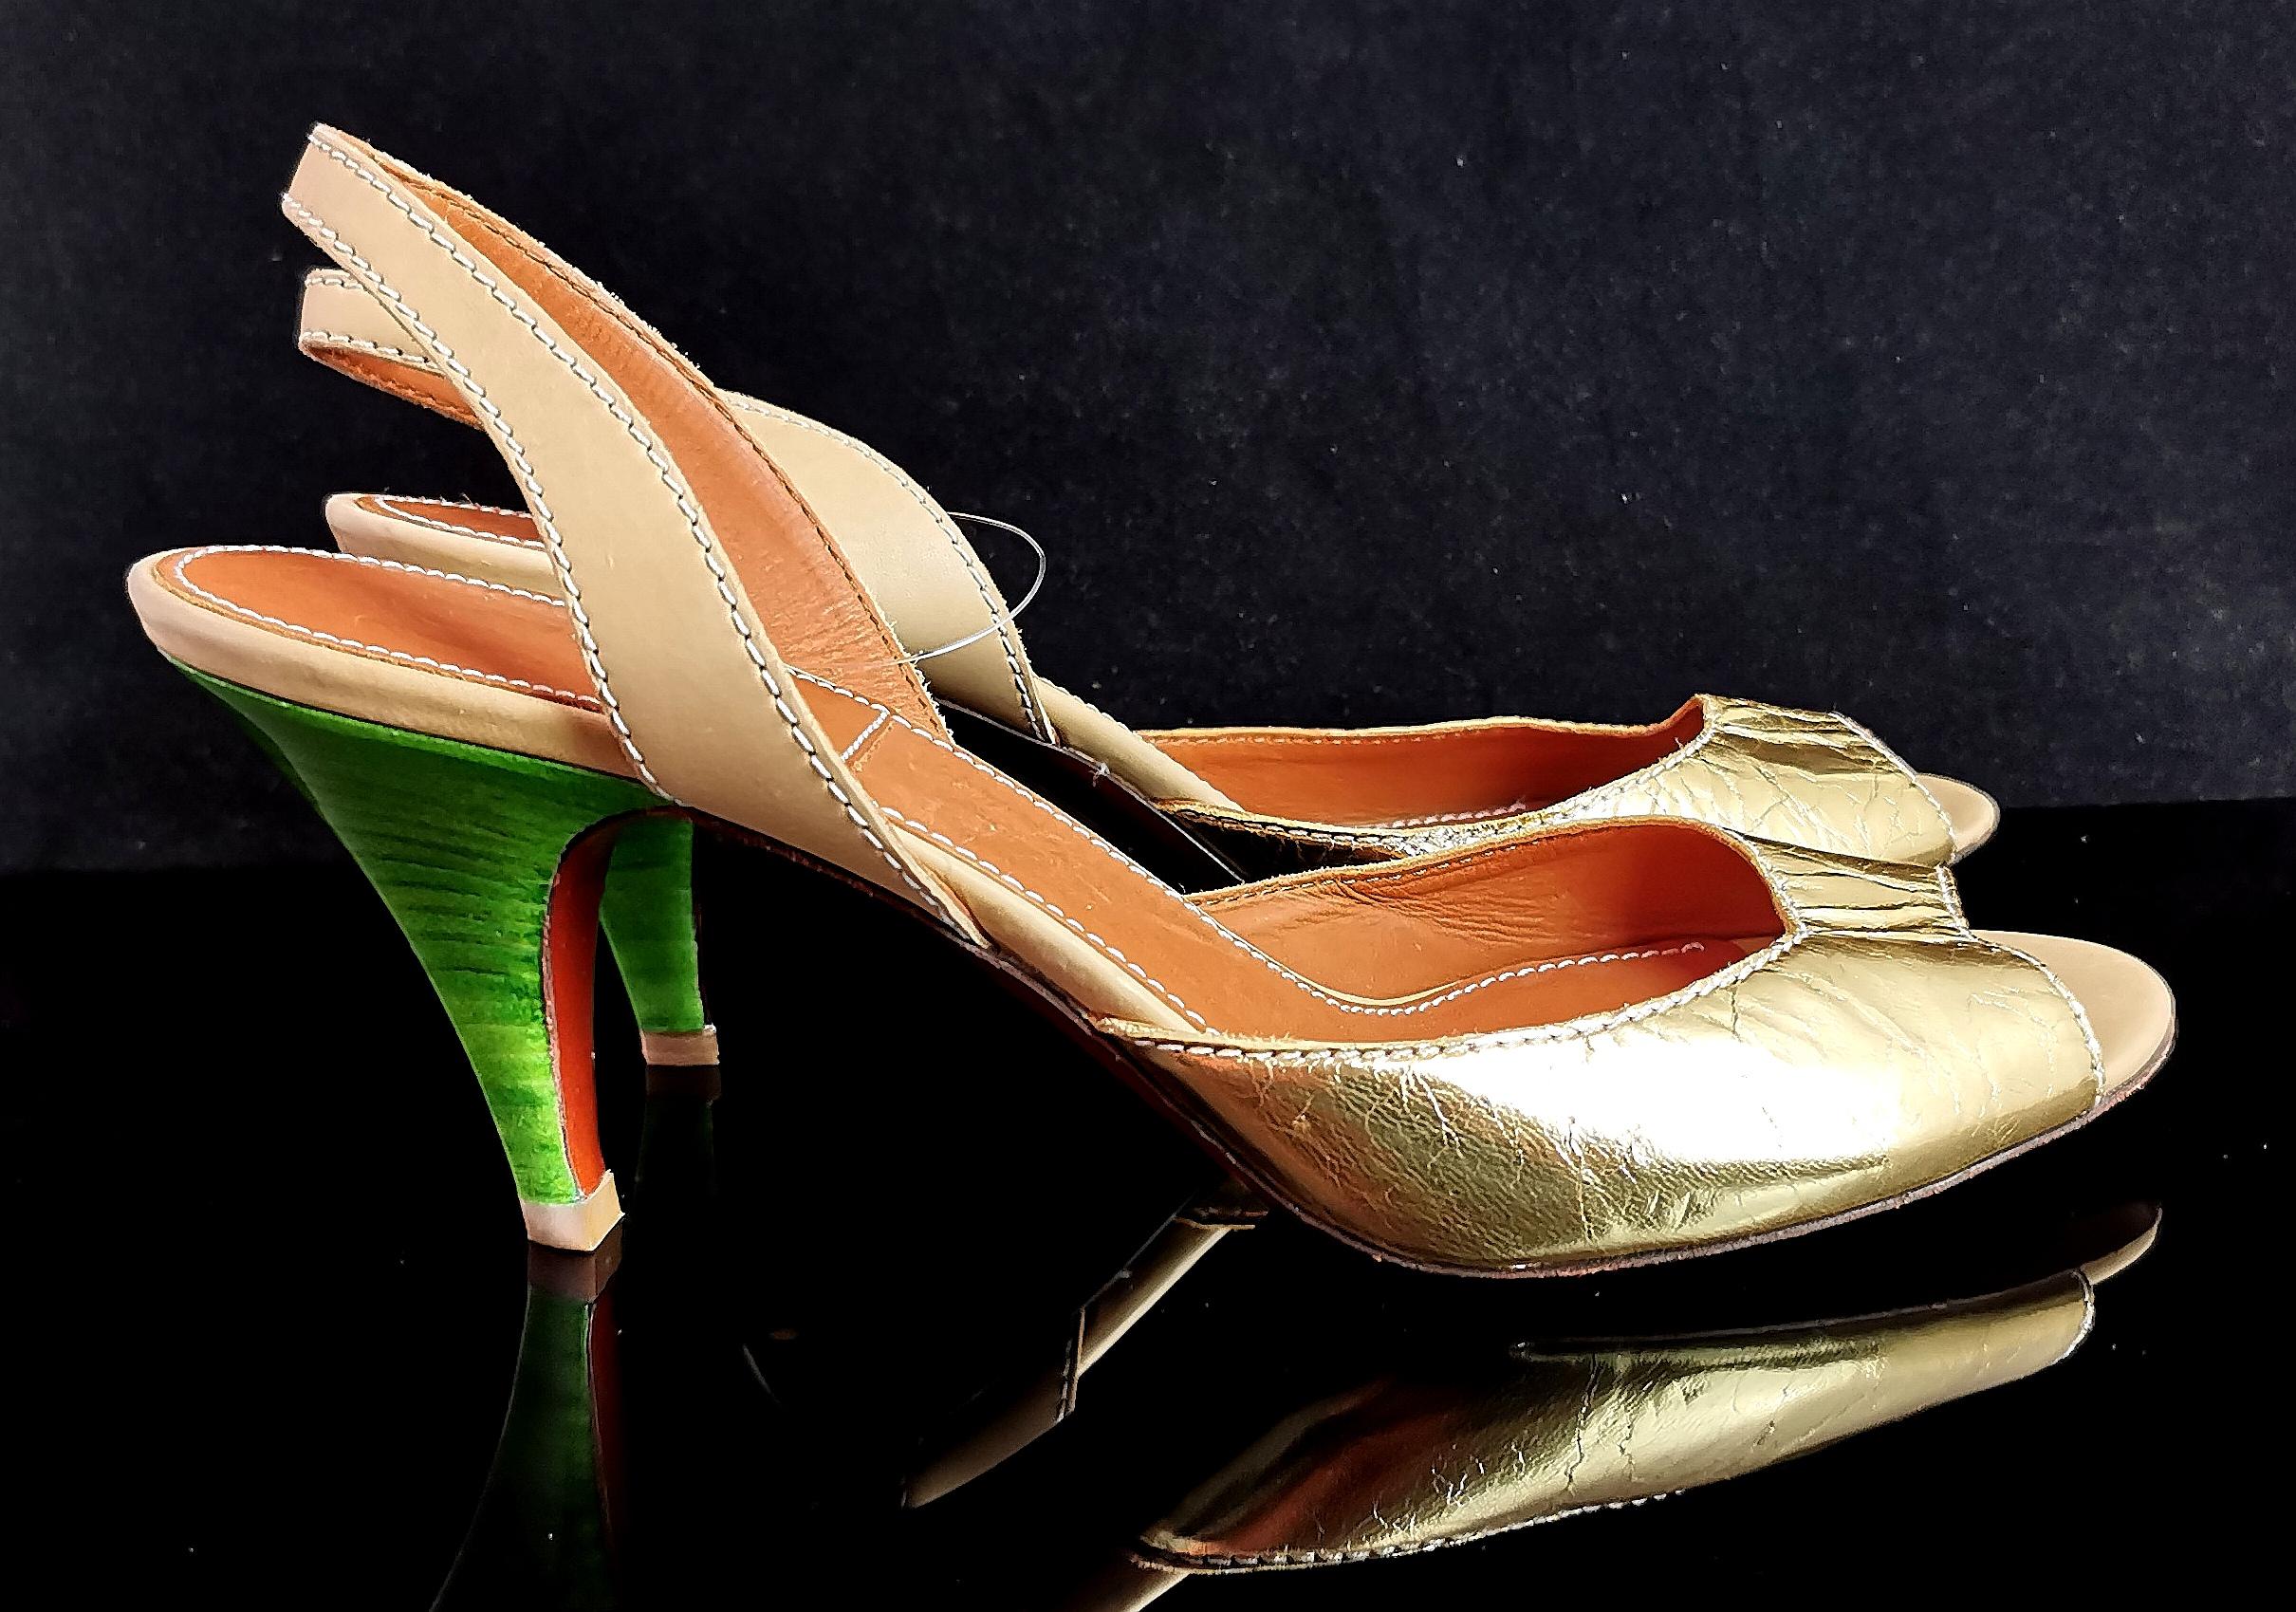 Une magnifique paire de sandales à talons lanvin, ete 2010.

Ces magnifiques chaussures sont riches en design et en couleurs avec une empeigne en cuir doré froissé et des petits talons vert émeraude. 

Elles ont une bride de cheville en cuir beige